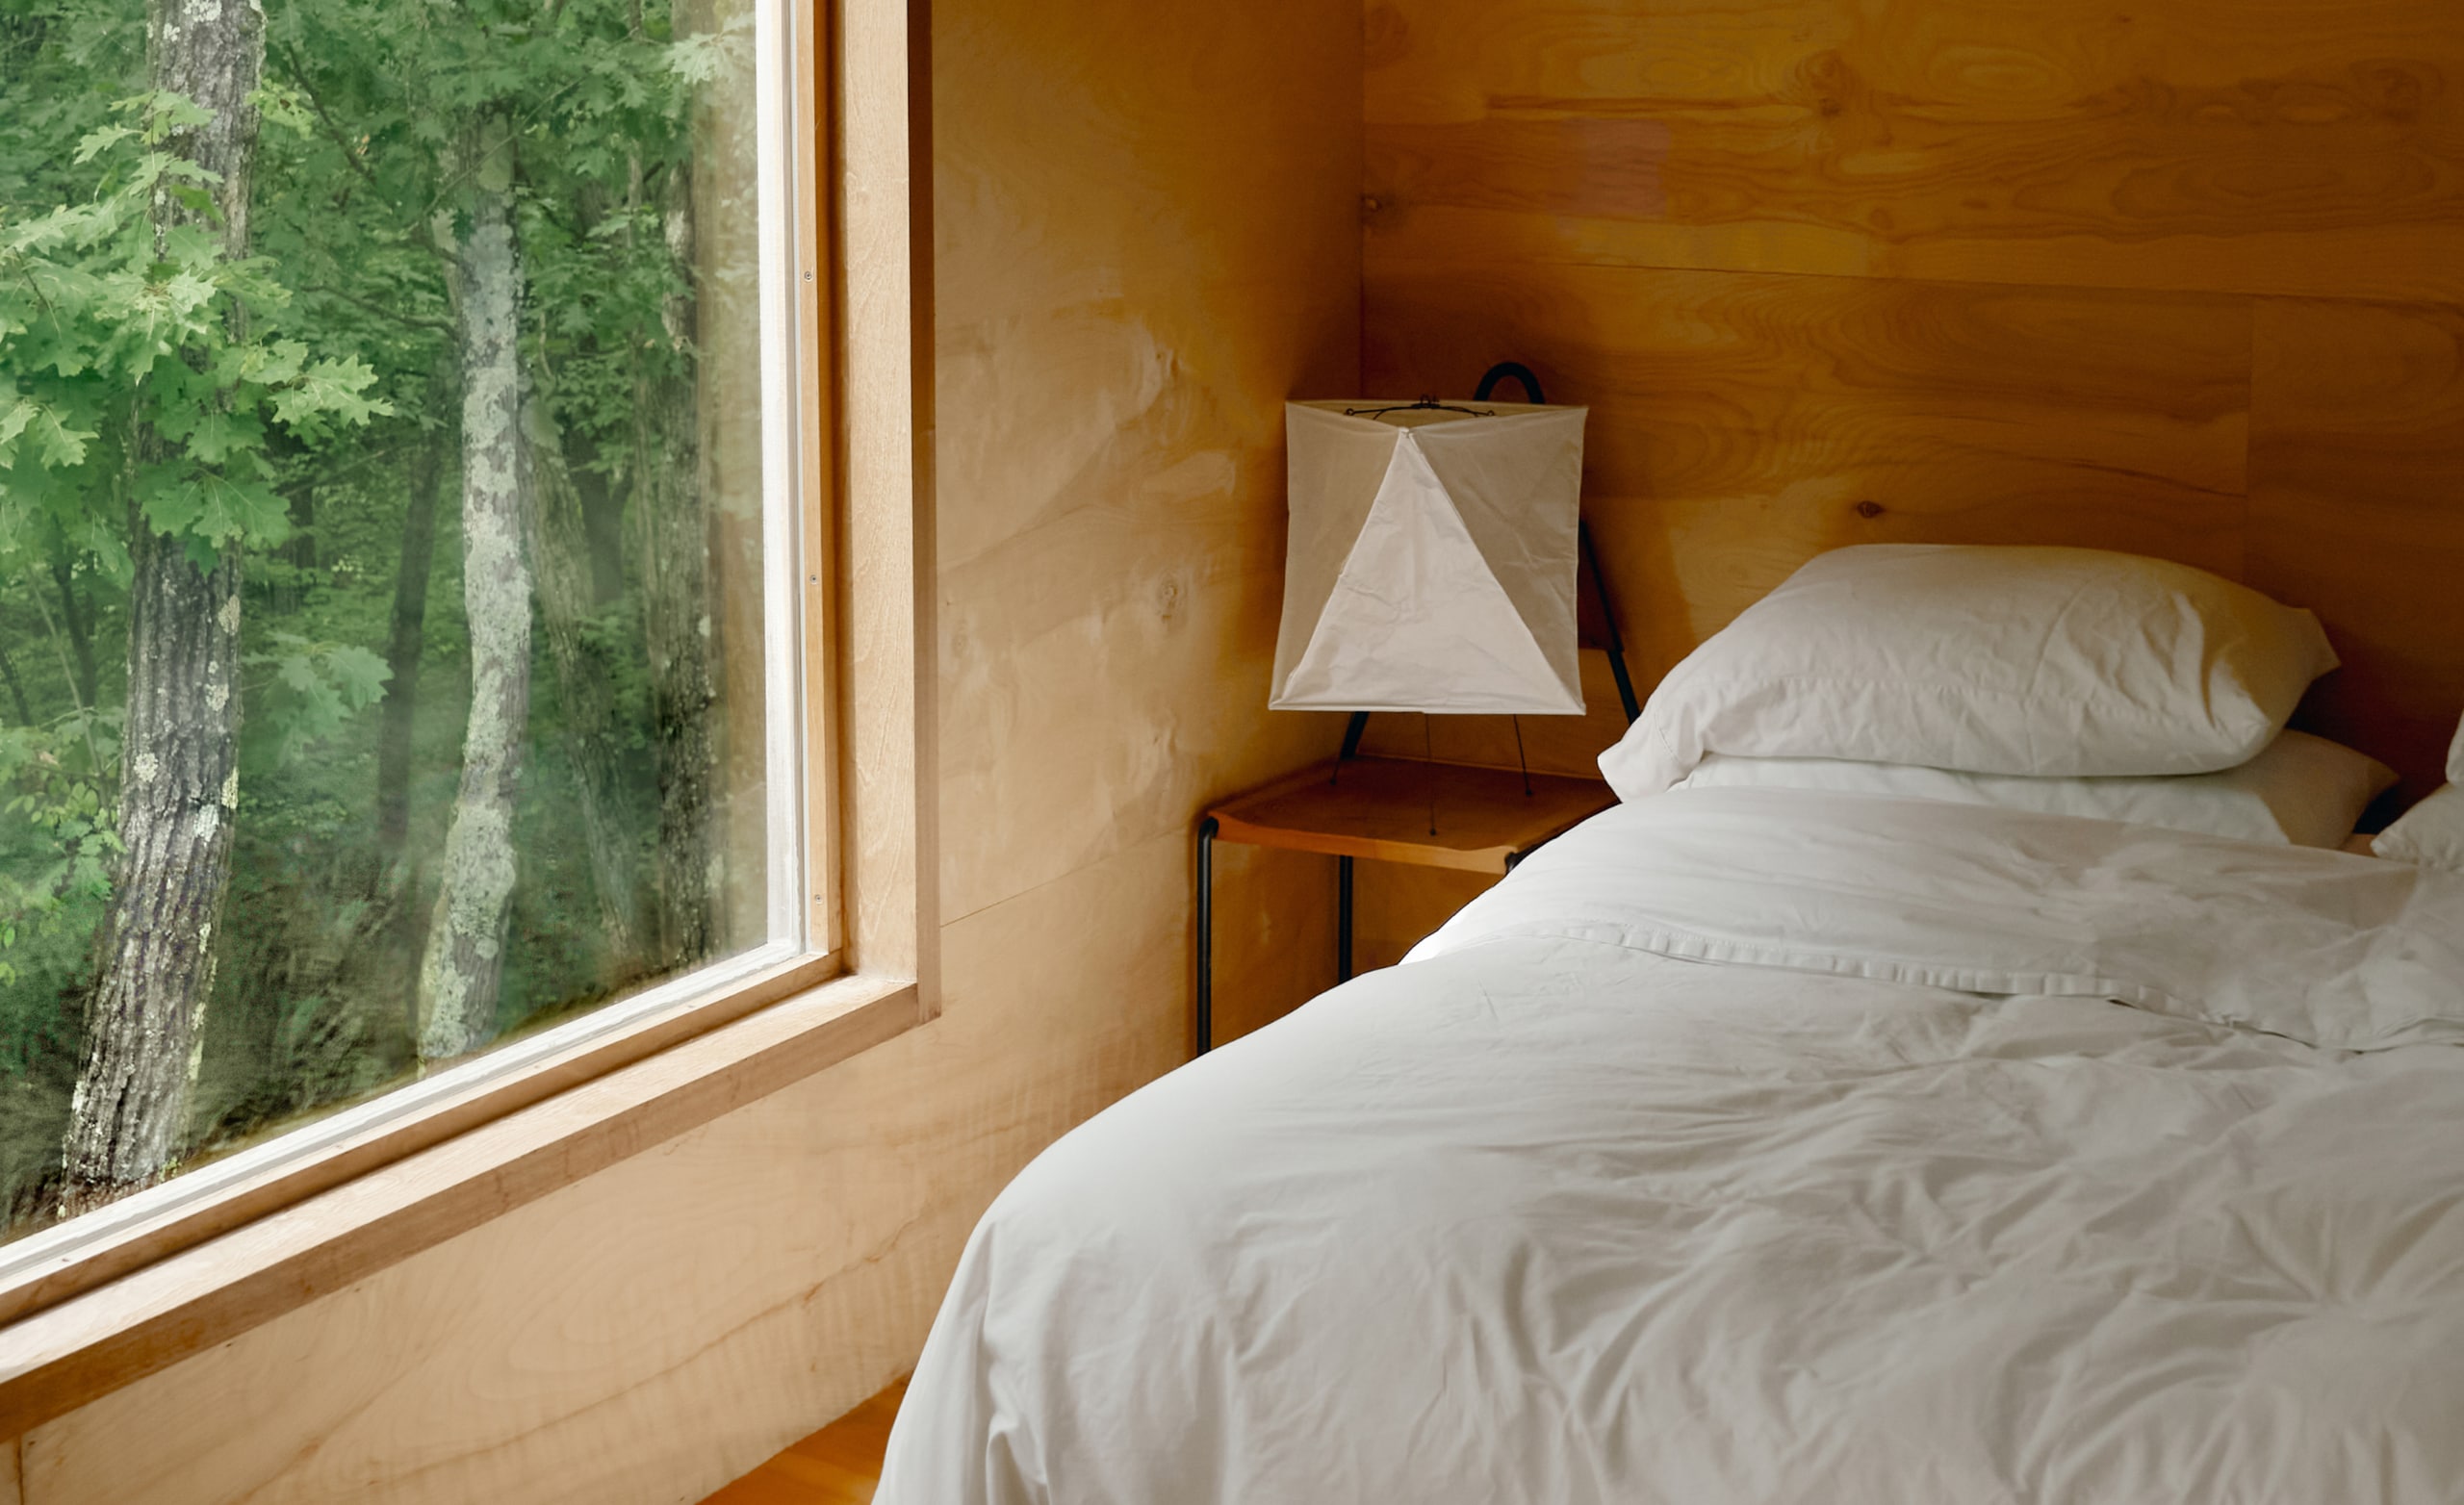 Dans une chambre, un lit venant d'être fait avec des draps blancs et une grande fenêtre qui donne sur des arbres à l'extérieur.